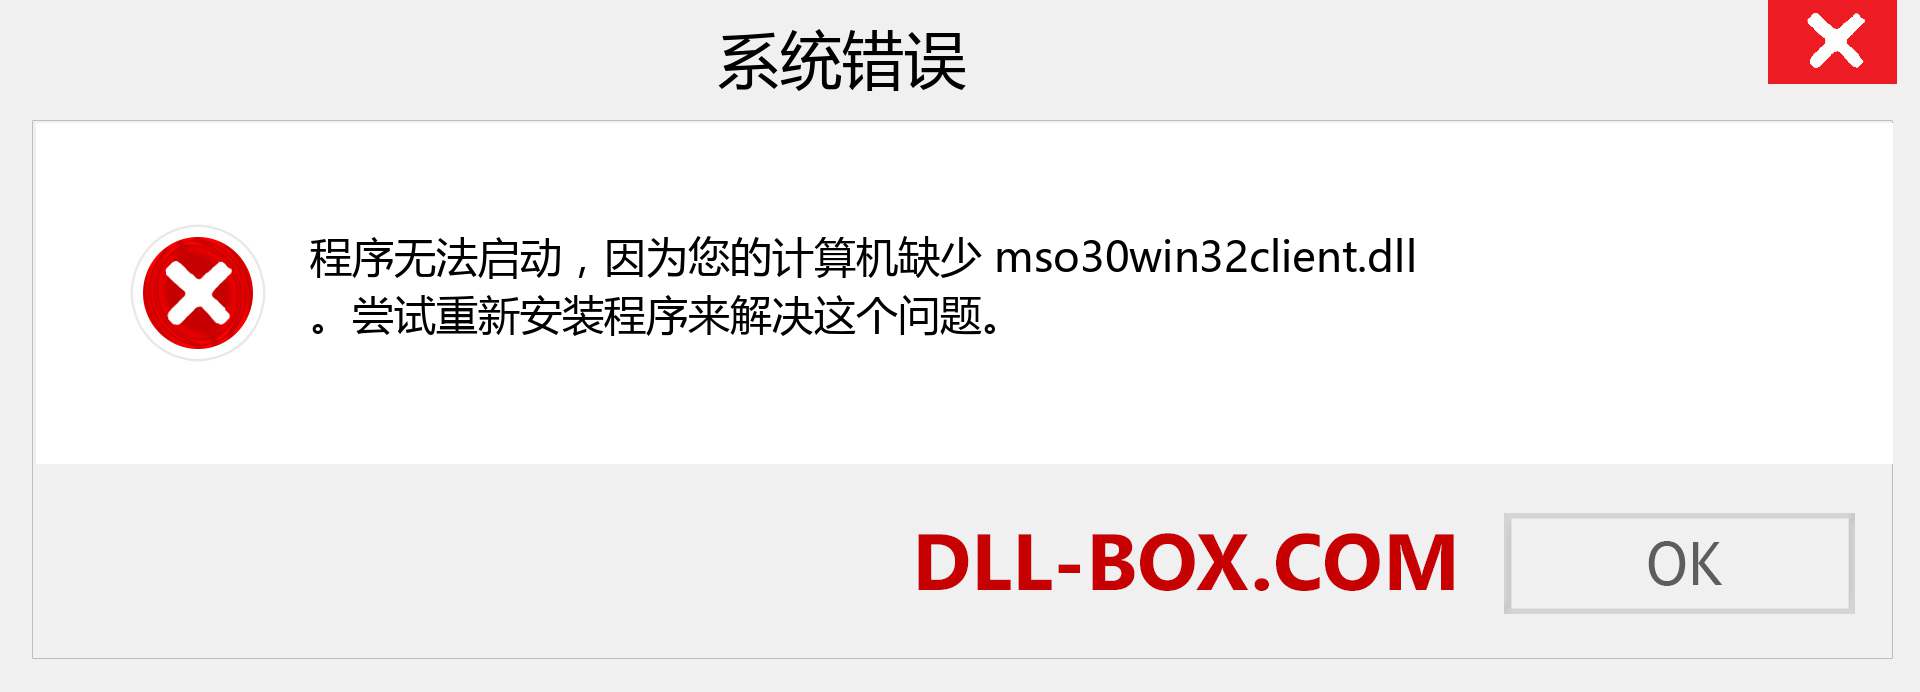 mso30win32client.dll 文件丢失？。 适用于 Windows 7、8、10 的下载 - 修复 Windows、照片、图像上的 mso30win32client dll 丢失错误